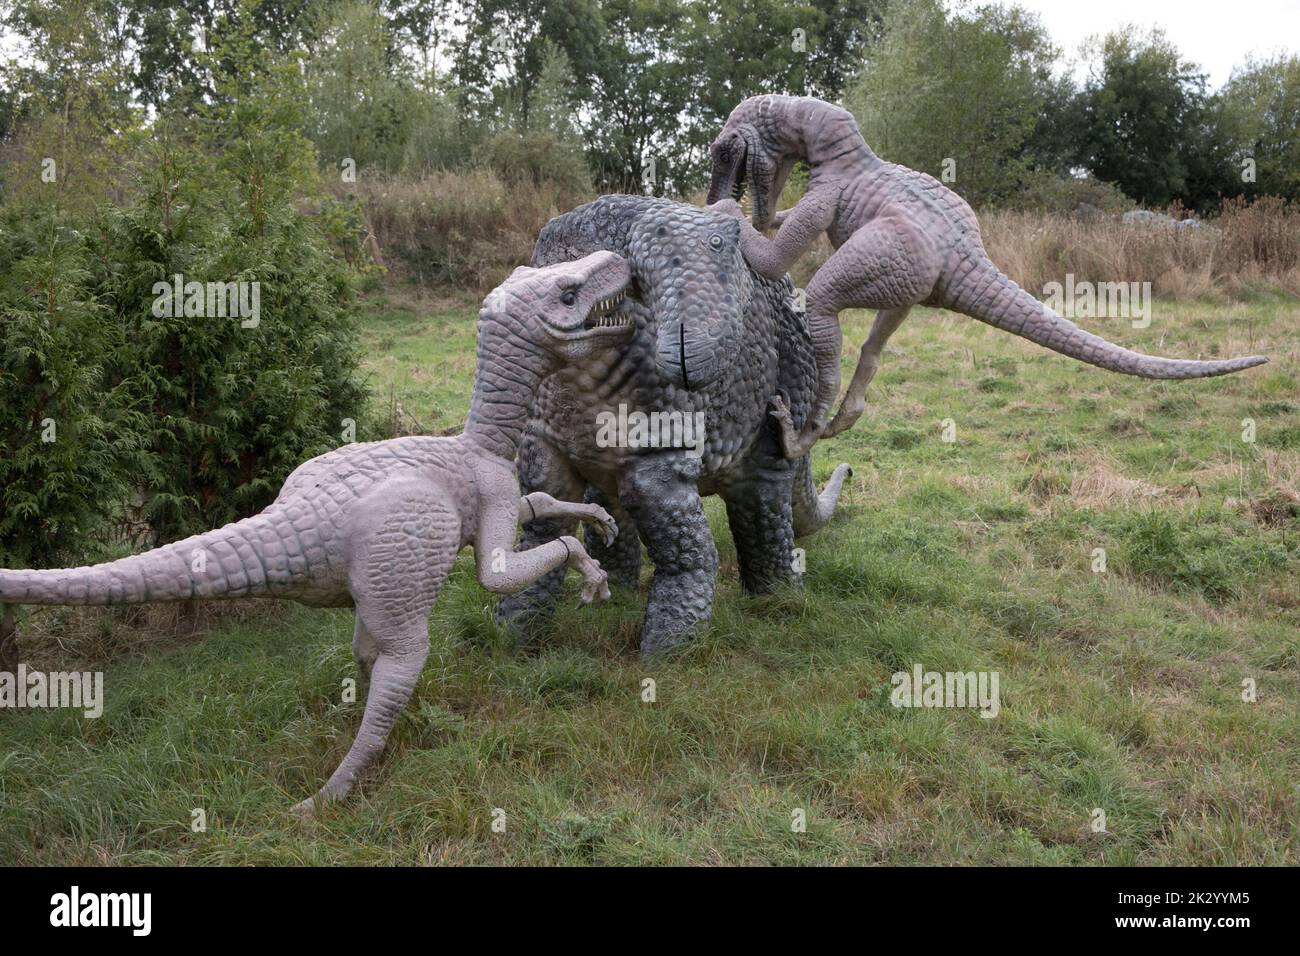 Lifesize models of Deinonychus theropods attaching herbivorous Tenontosaurus All Things Wild, Honeybourne, UK Stock Photo